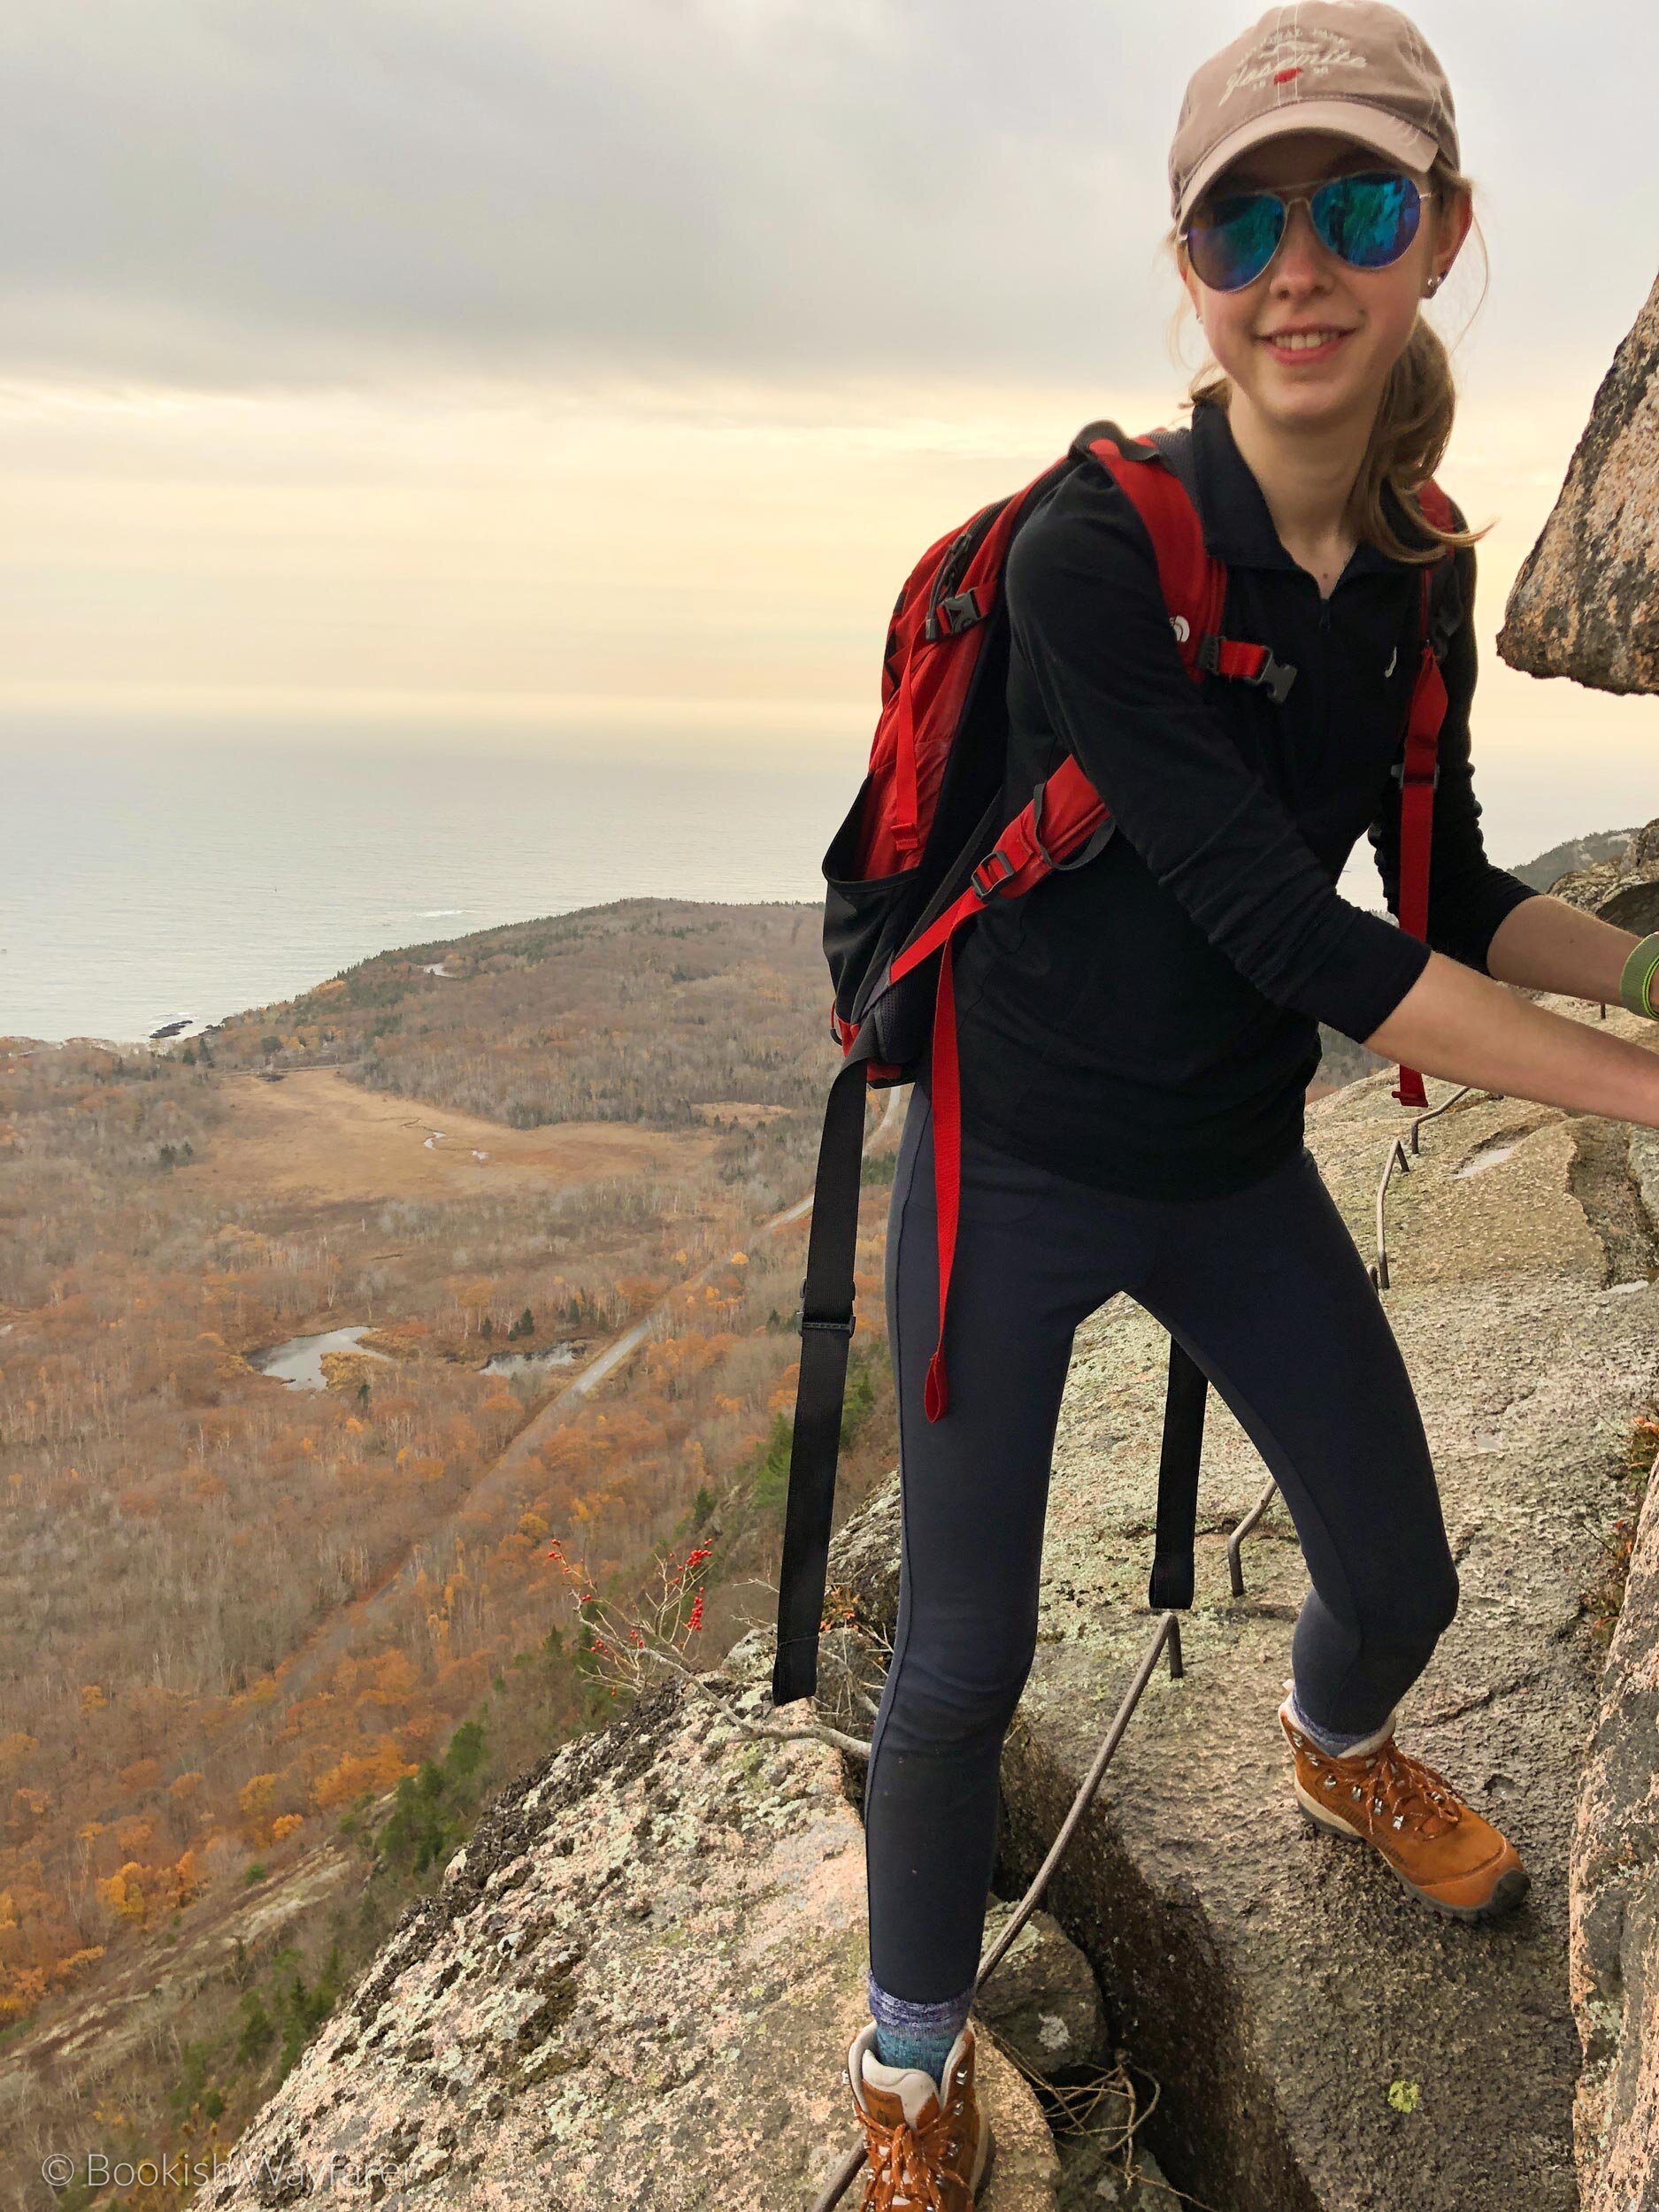 precipice-trail-me-on-cliff